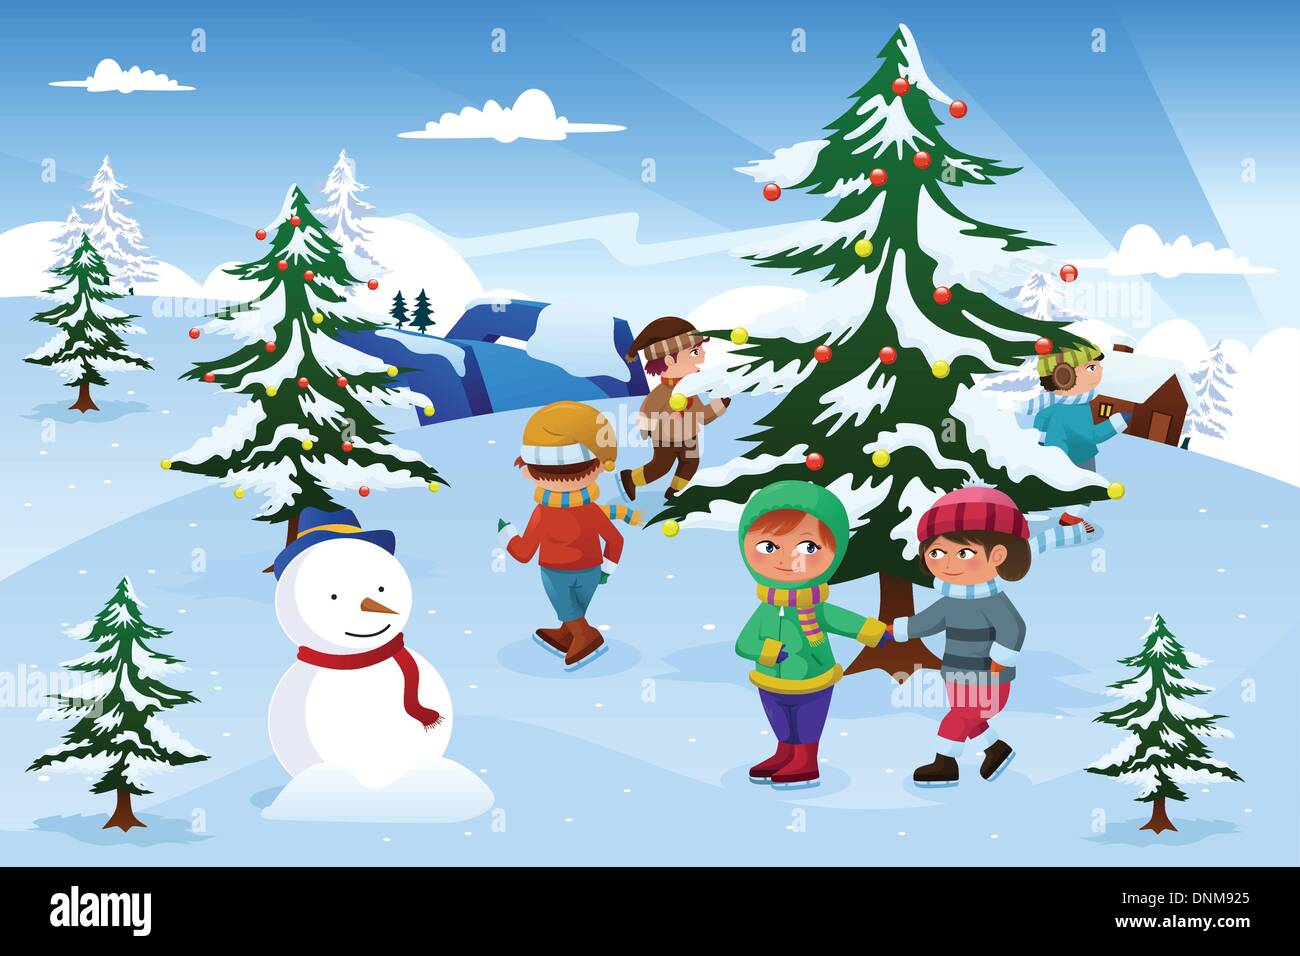 Un vecteur illustration de groupe d'enfants heureux tourner autour d'un arbre de Noël Illustration de Vecteur